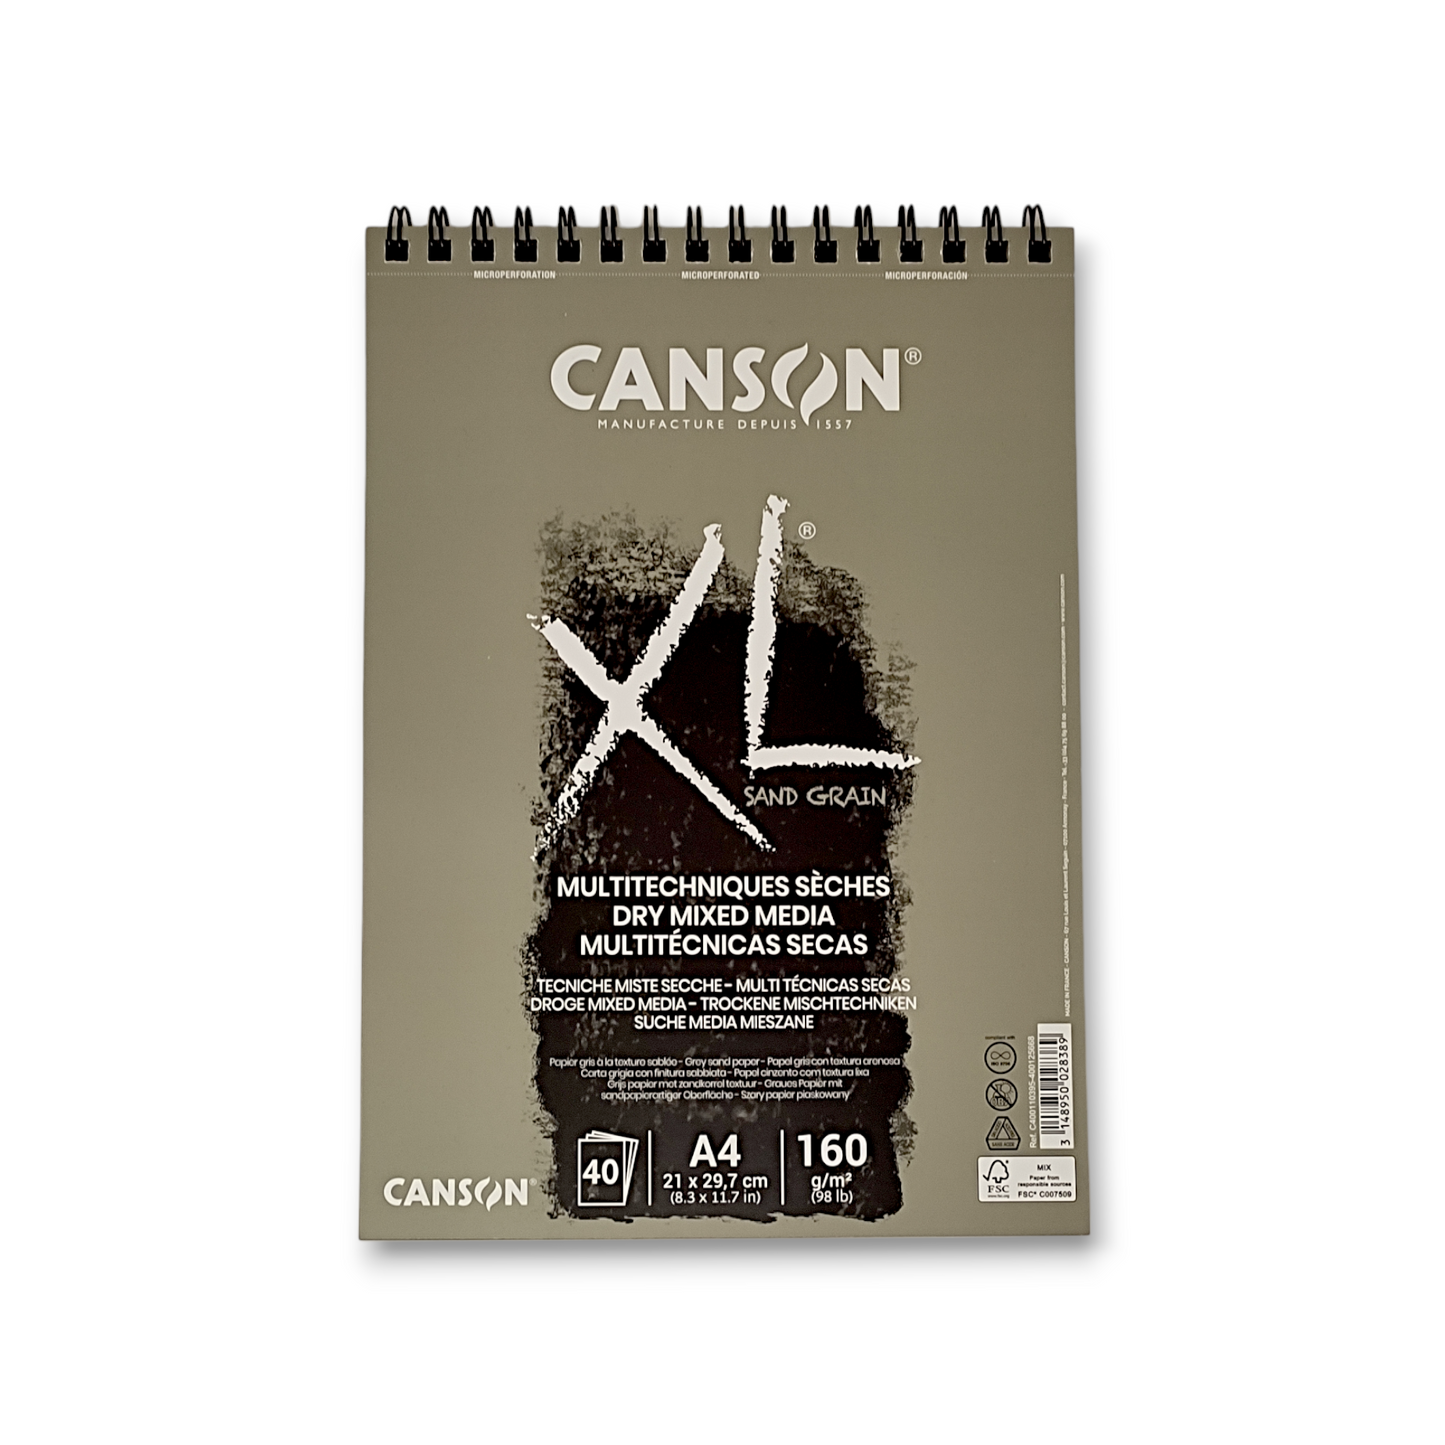 CANSON XL SAND GRAIN - Carta grigia sabbiata